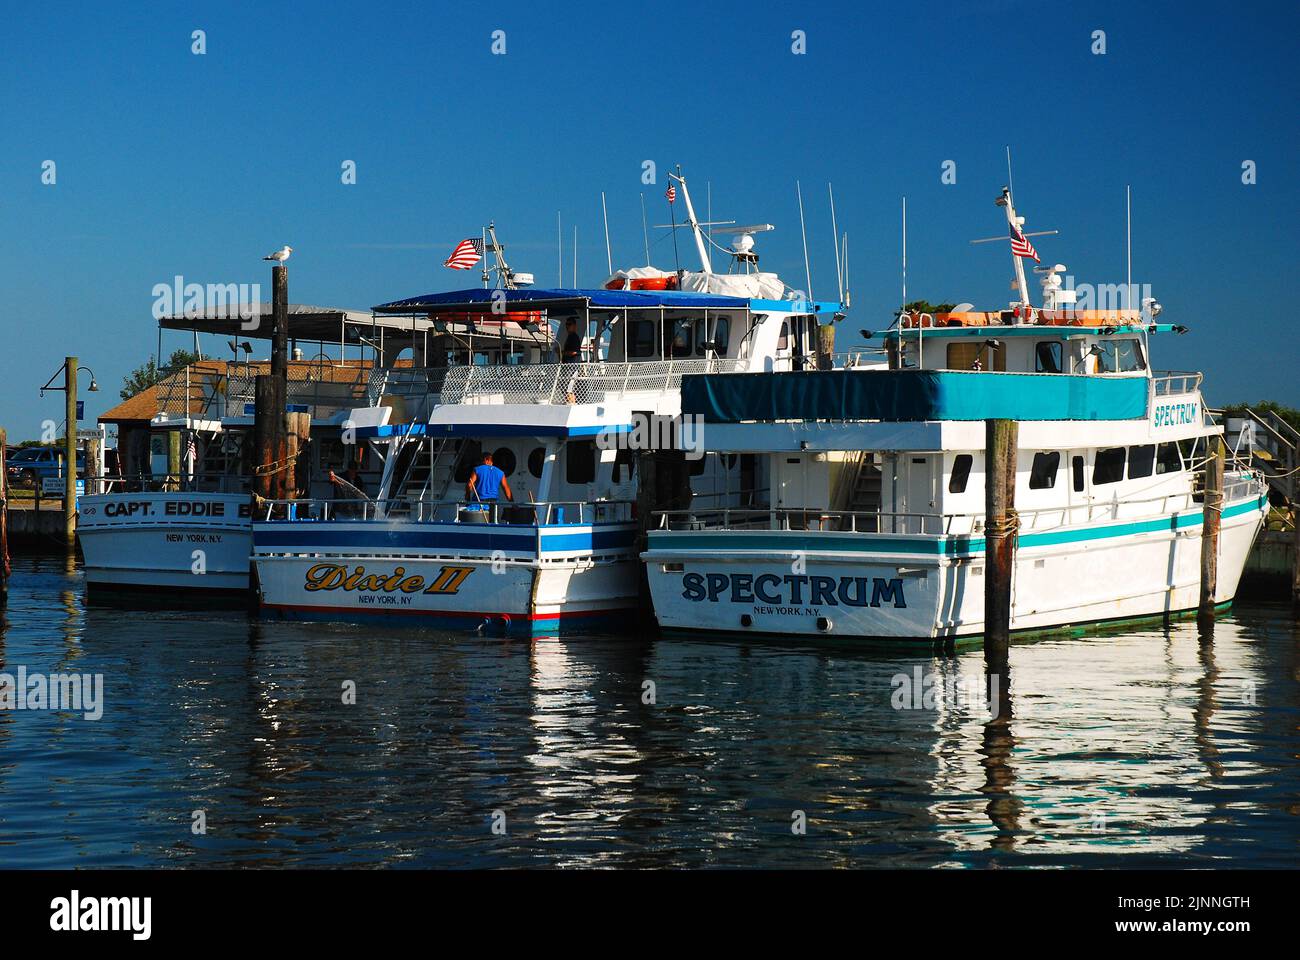 La flotte de bateaux de pêche affrétés du parc national Captree de long Island se reflète dans l'eau calme du port Banque D'Images